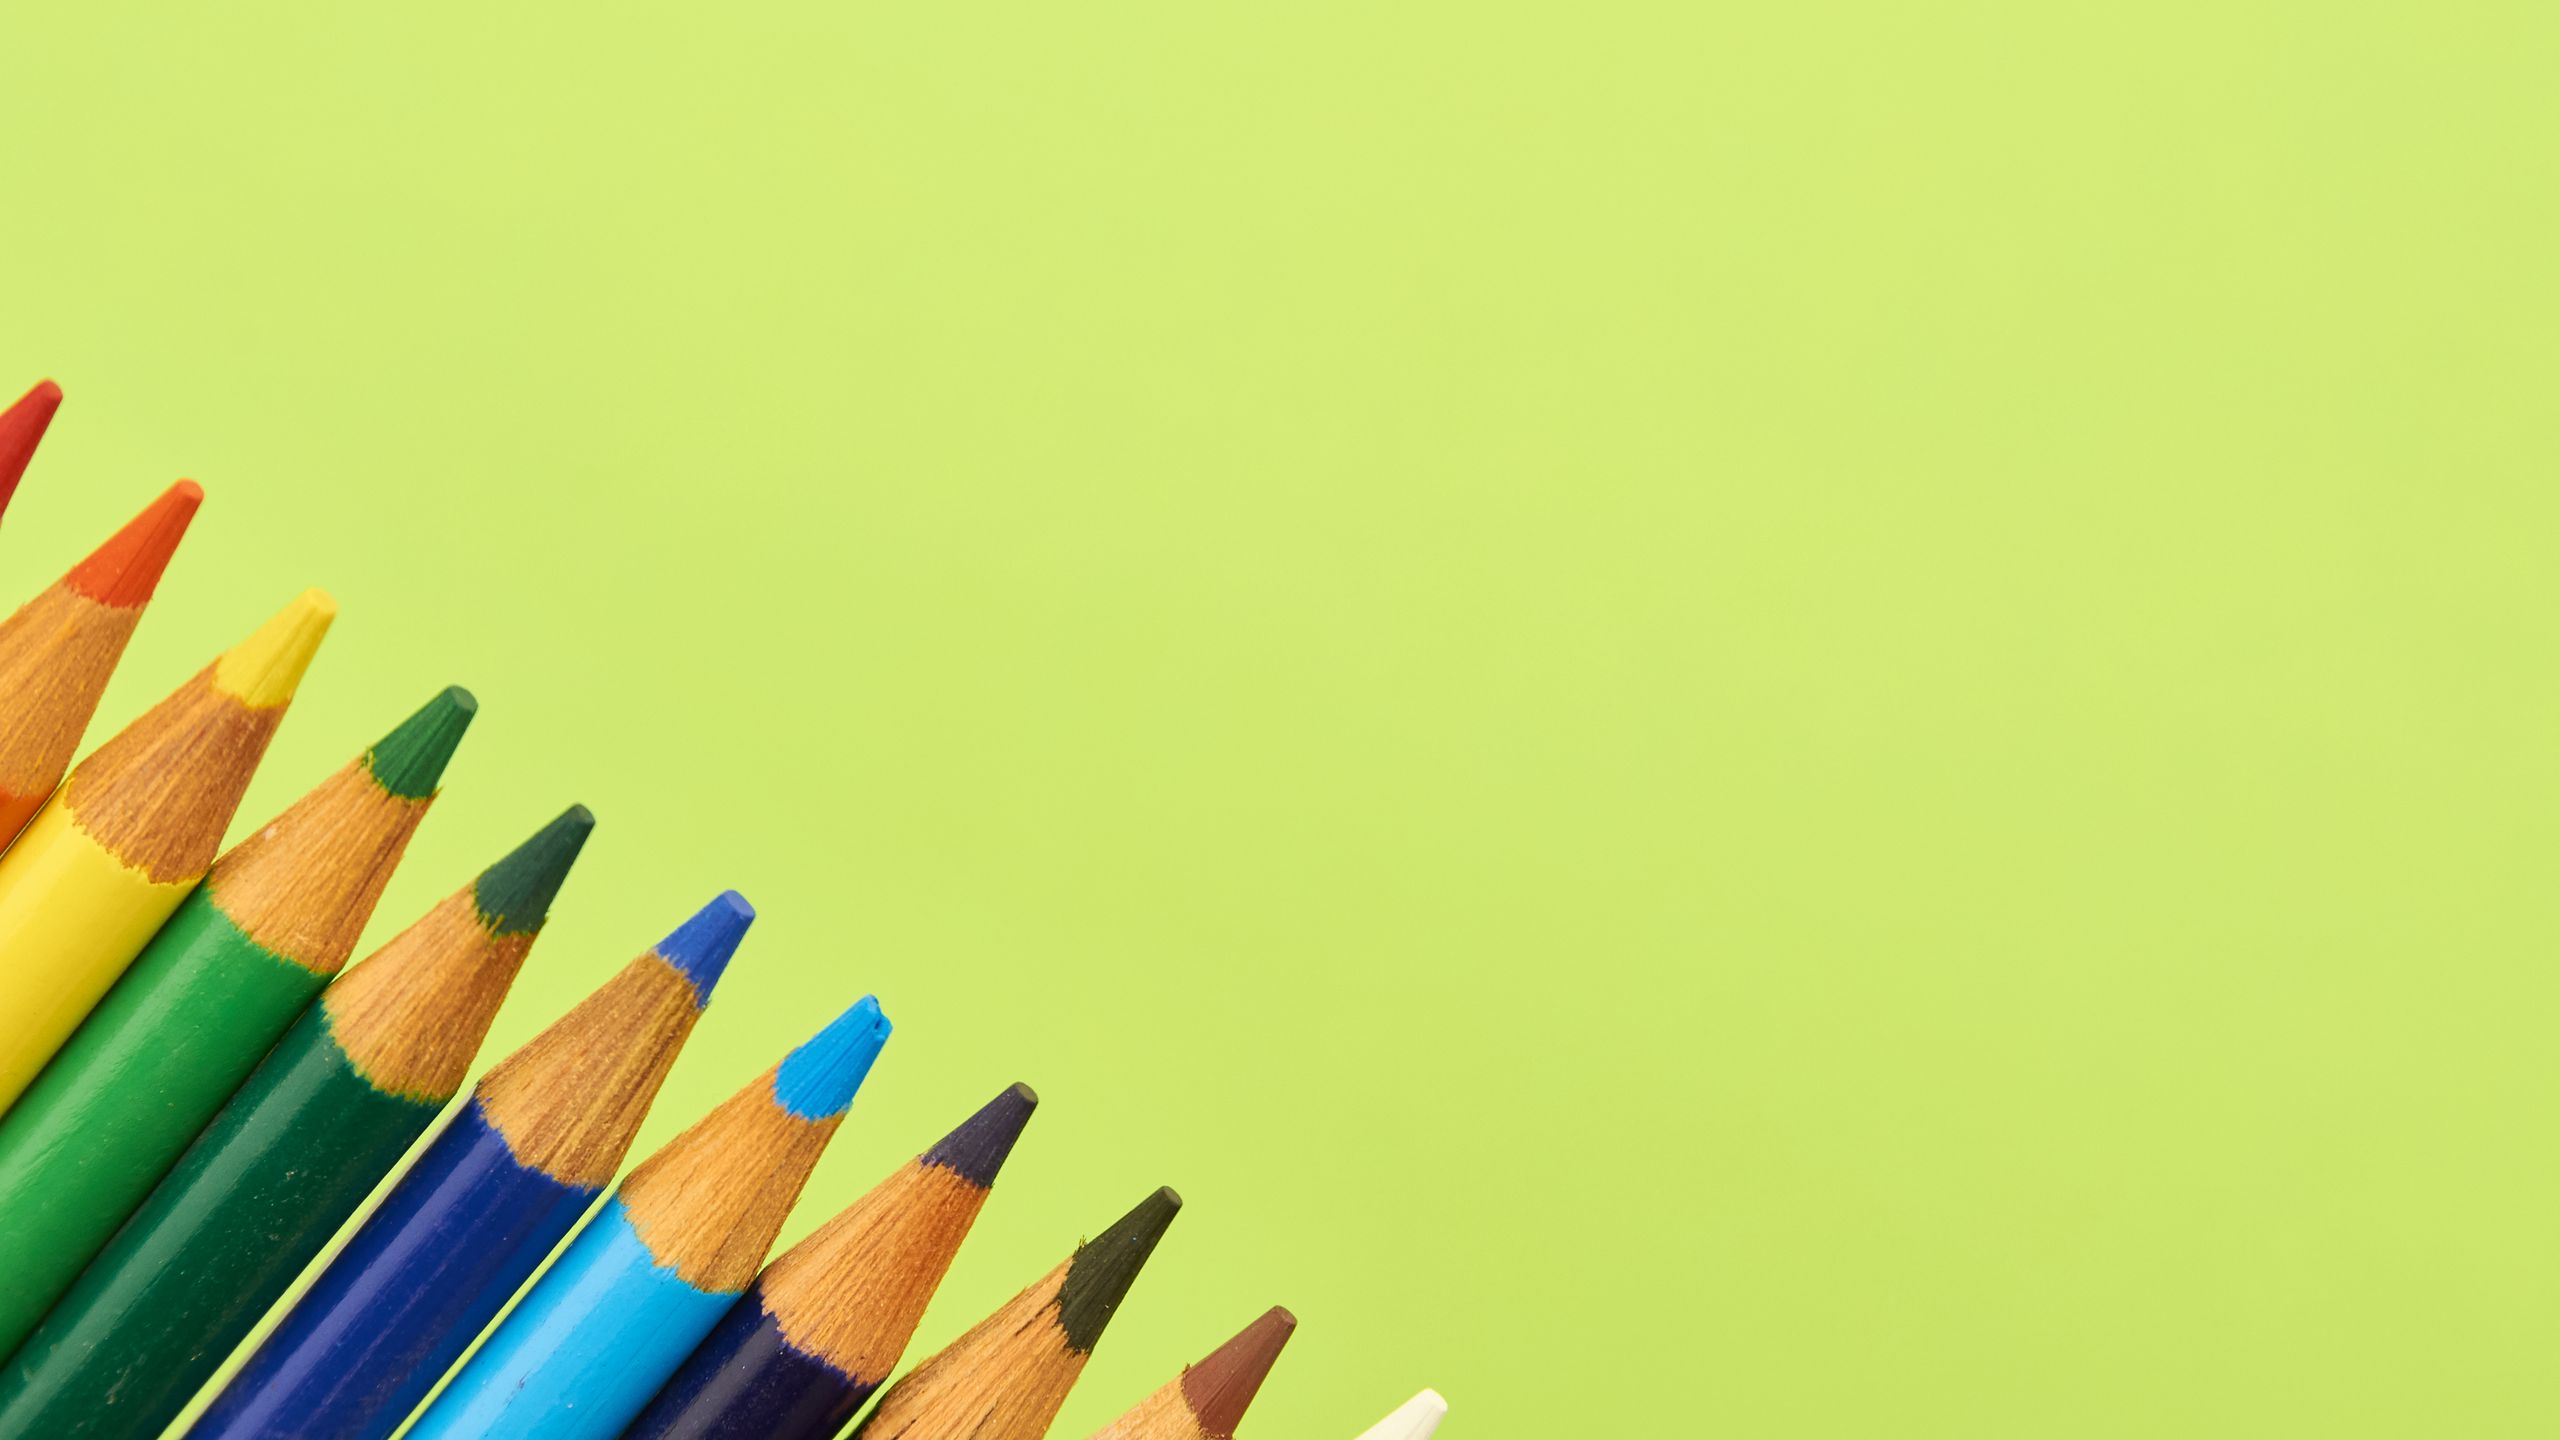 art pencils #pencils #wood #yellow #green #blue #orange #red #720P # wallpaper #hdwallpaper #desktop | Art pencils, Colored pencil set, Hd  wallpaper